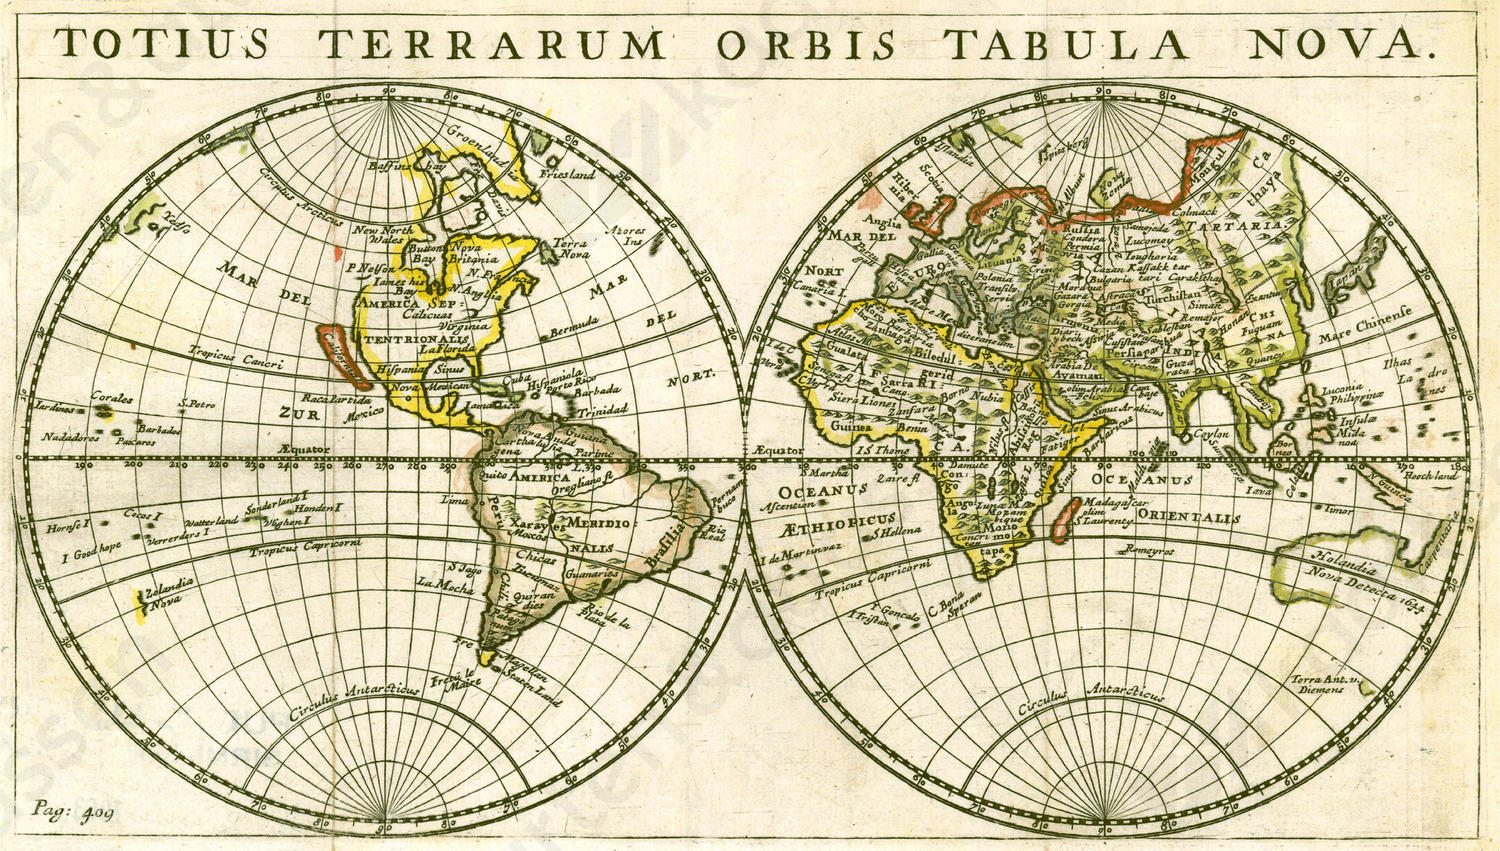 Wereldkaart Totius Terrarum 